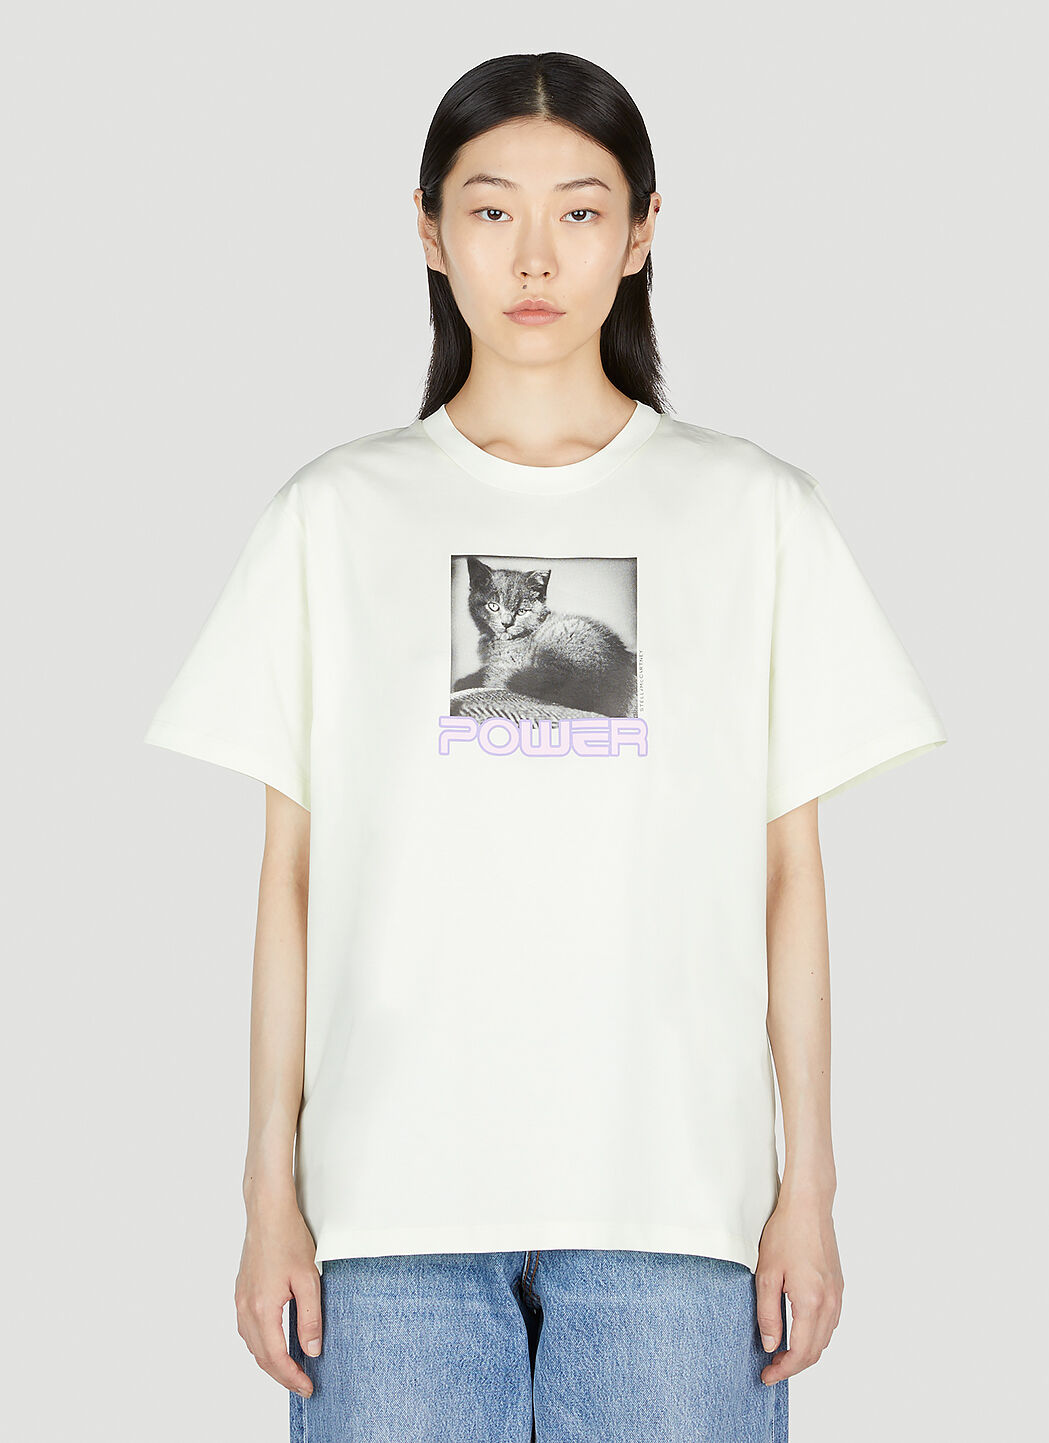 Stella McCartney キャットパワー Tシャツ レッド stm0254004